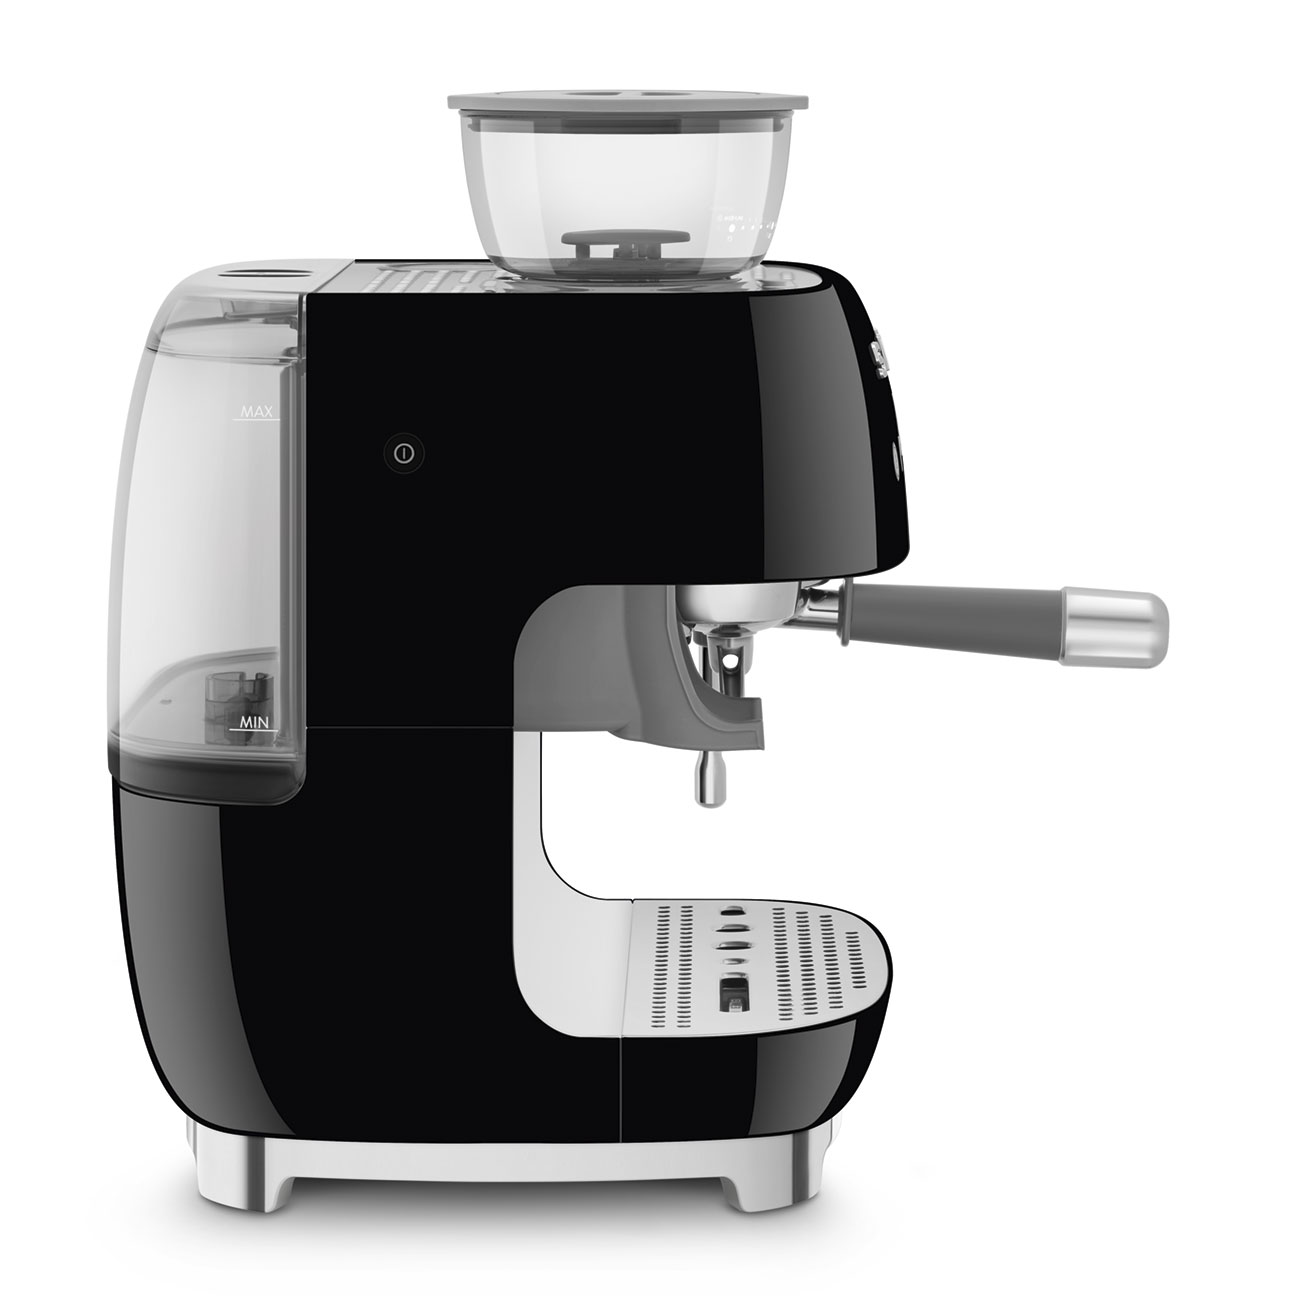 Smeg Macchina per caffè espresso manuale con macinacaffè integrato – Modulo